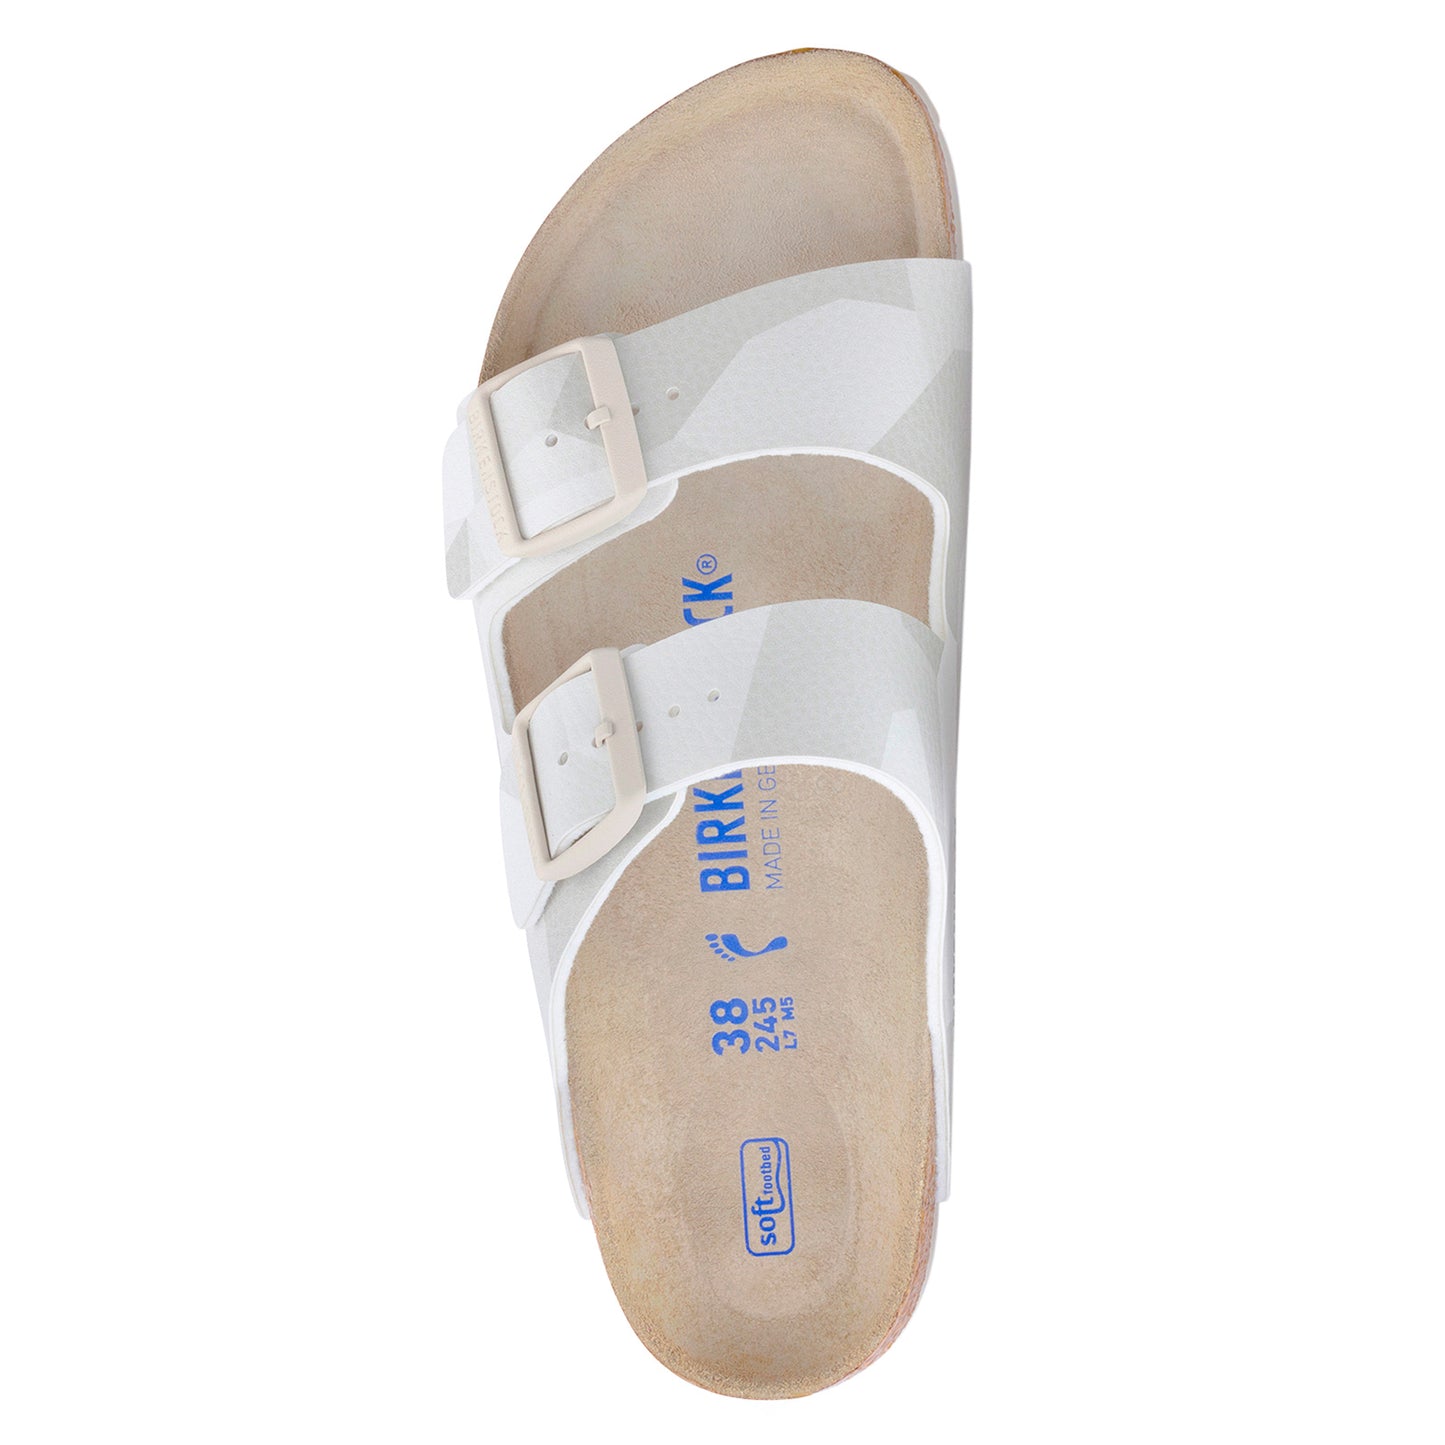 Peltz Shoes  Women's Birkenstock Arizona Soft Footbed Sandal - Narrow Width WHITE 1024 871 N